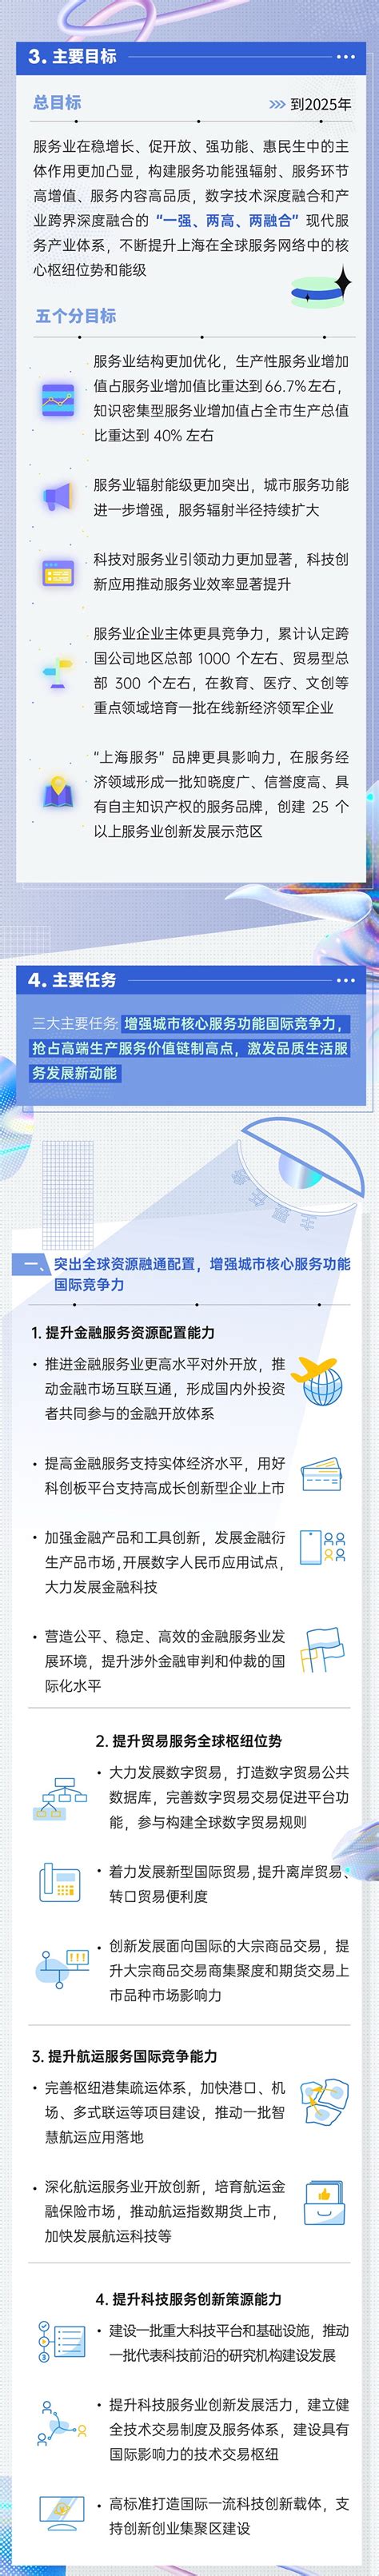 【上海服务】奉贤区率先实现“一个工作日内‘五证齐发’” 以最高效率推动产业项目落地